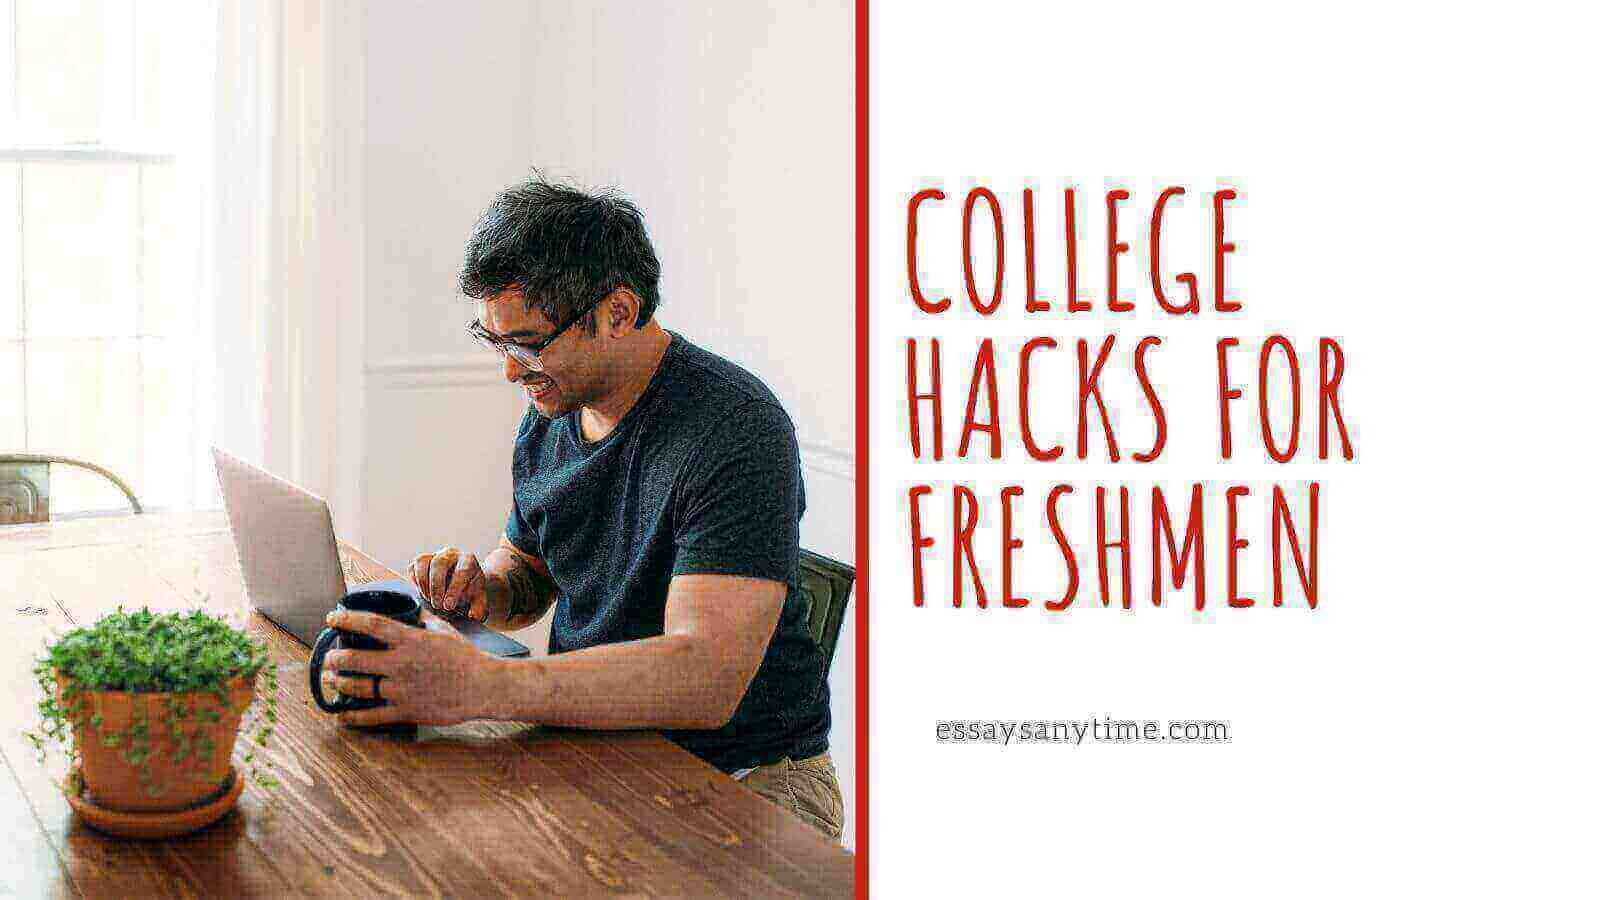 freshman advice, college hacks, freshman hacks, college newbie hacks, new to college, hacks for freshmen, college hacks for freshmen, college advice for freshmen